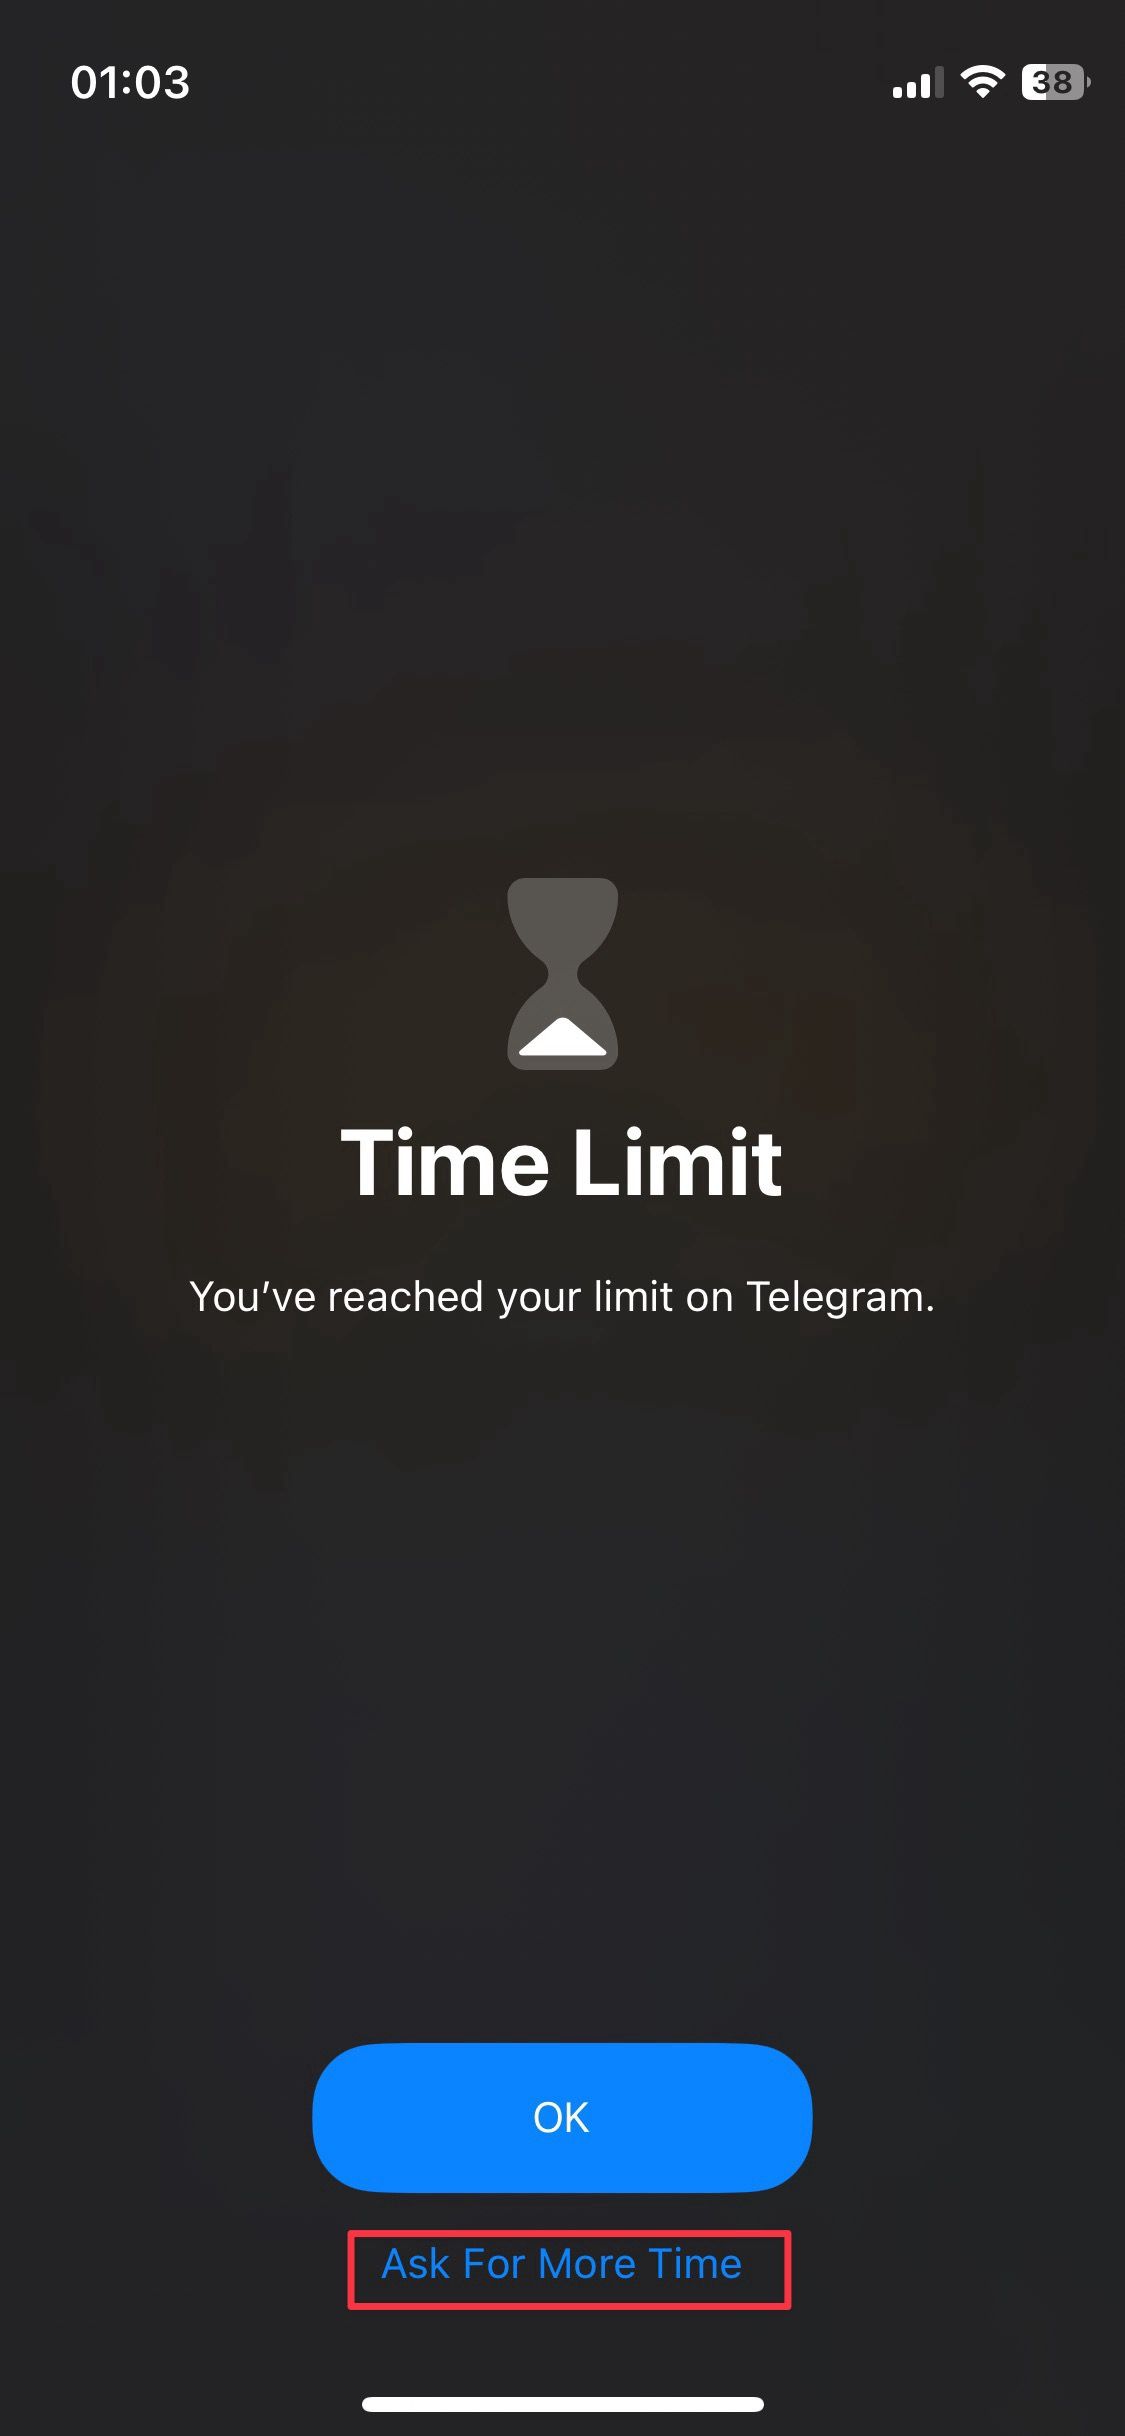 Captura de tela do aplicativo iOS mostrando que atingiu o limite de tempo diário permitido